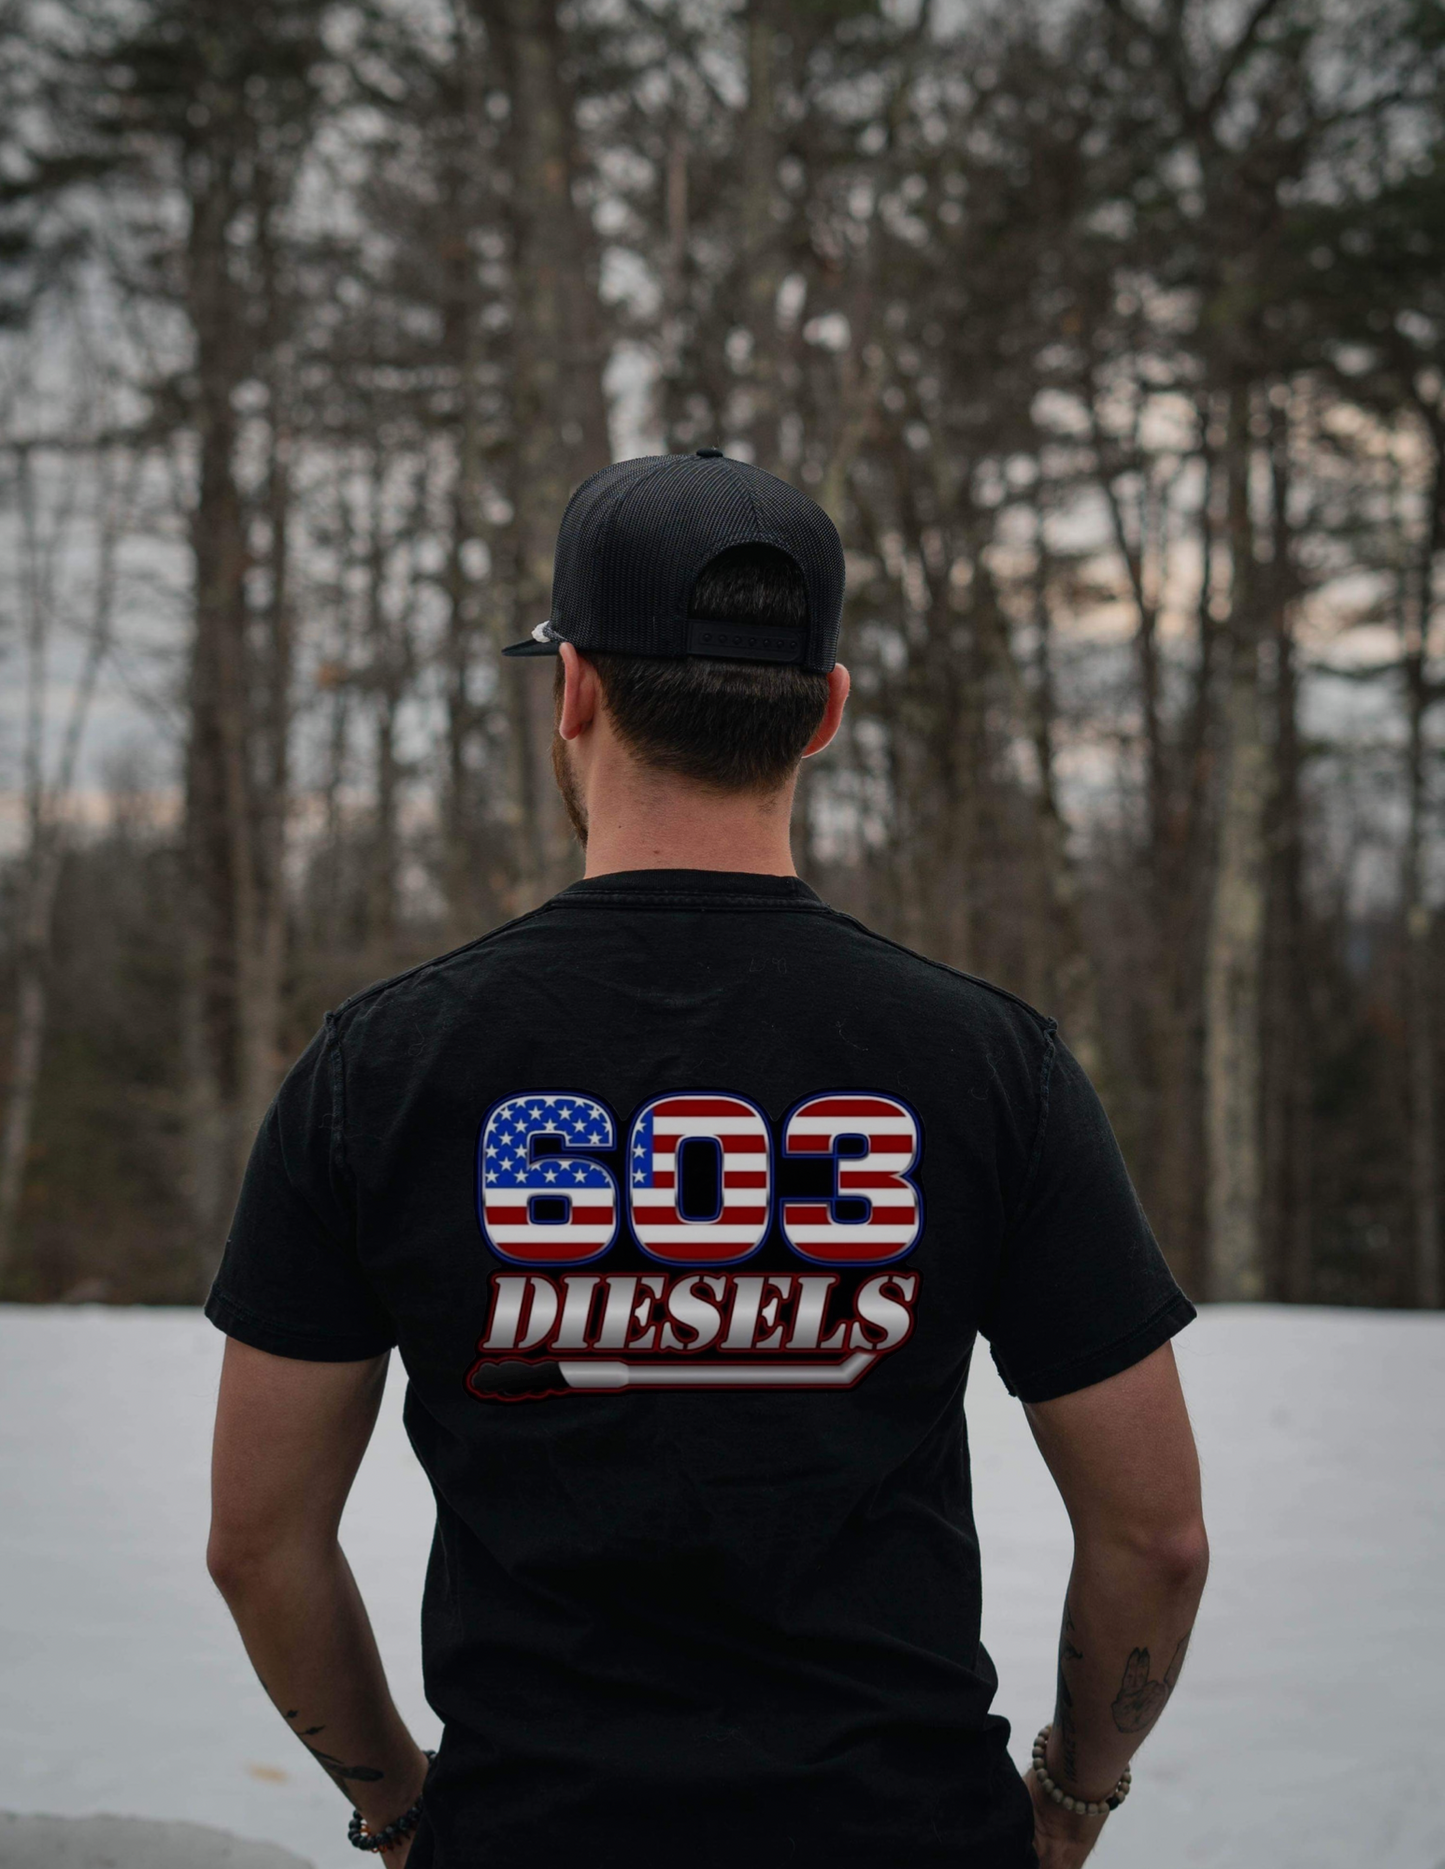 603 Diesels Tshirt